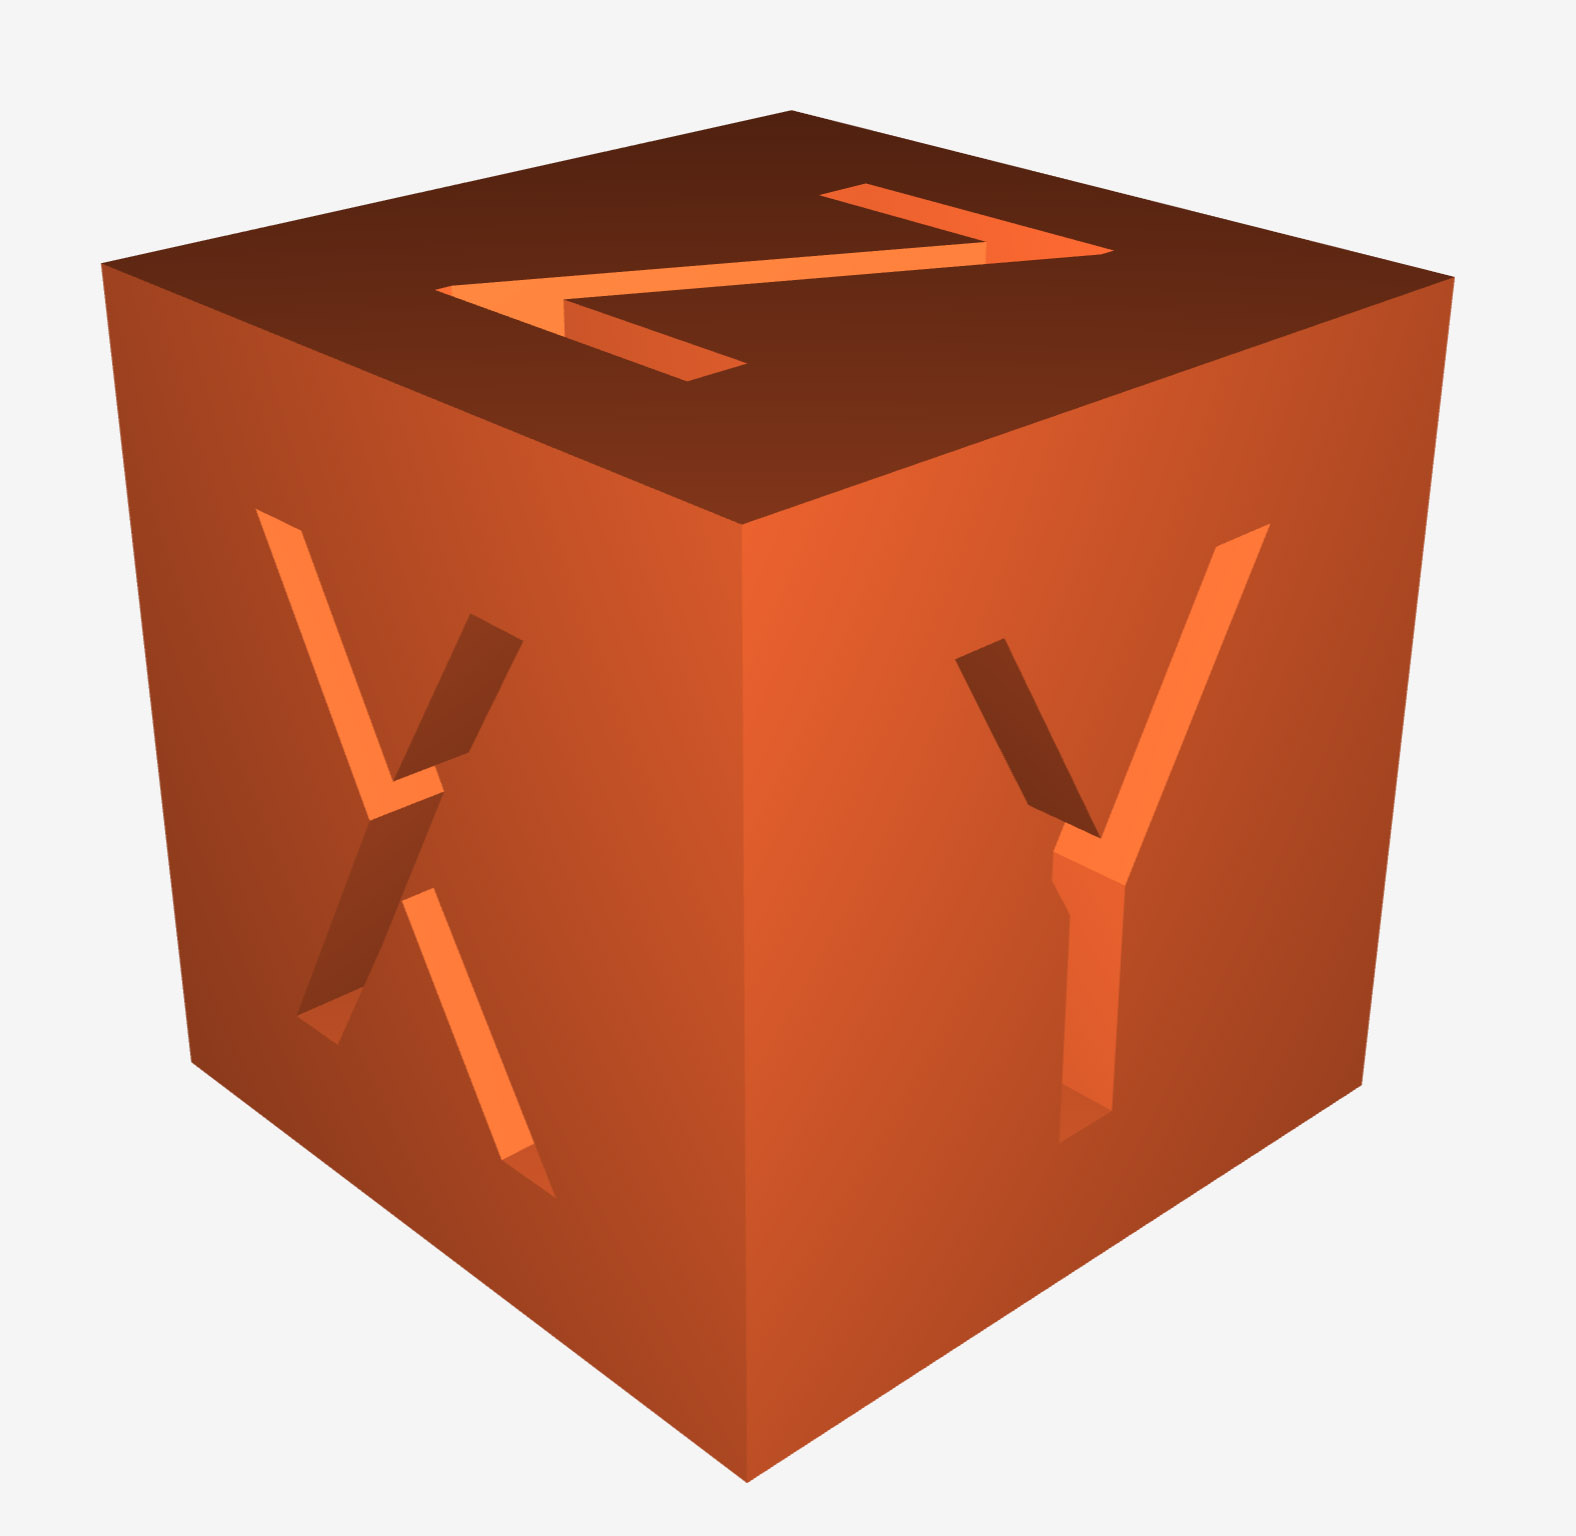 XYZ Calibration Cube